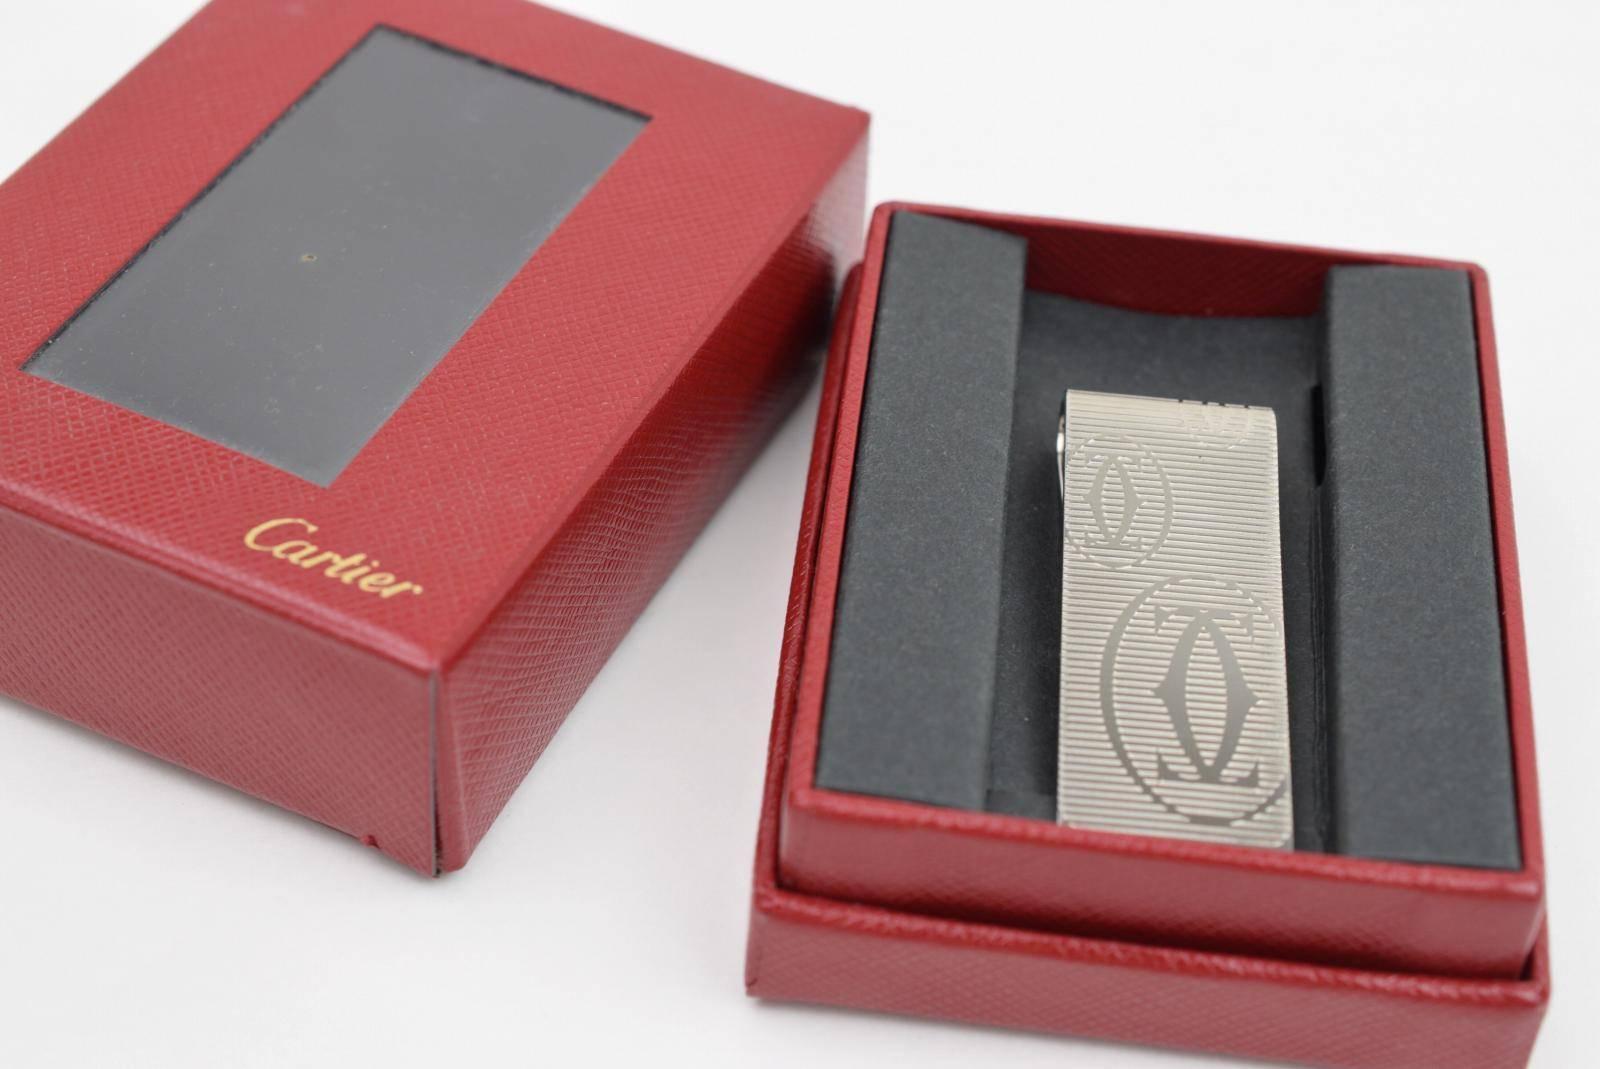  Pince à billets pour hommes Cartier en métal argenté texturé dans une boîte Pour hommes 